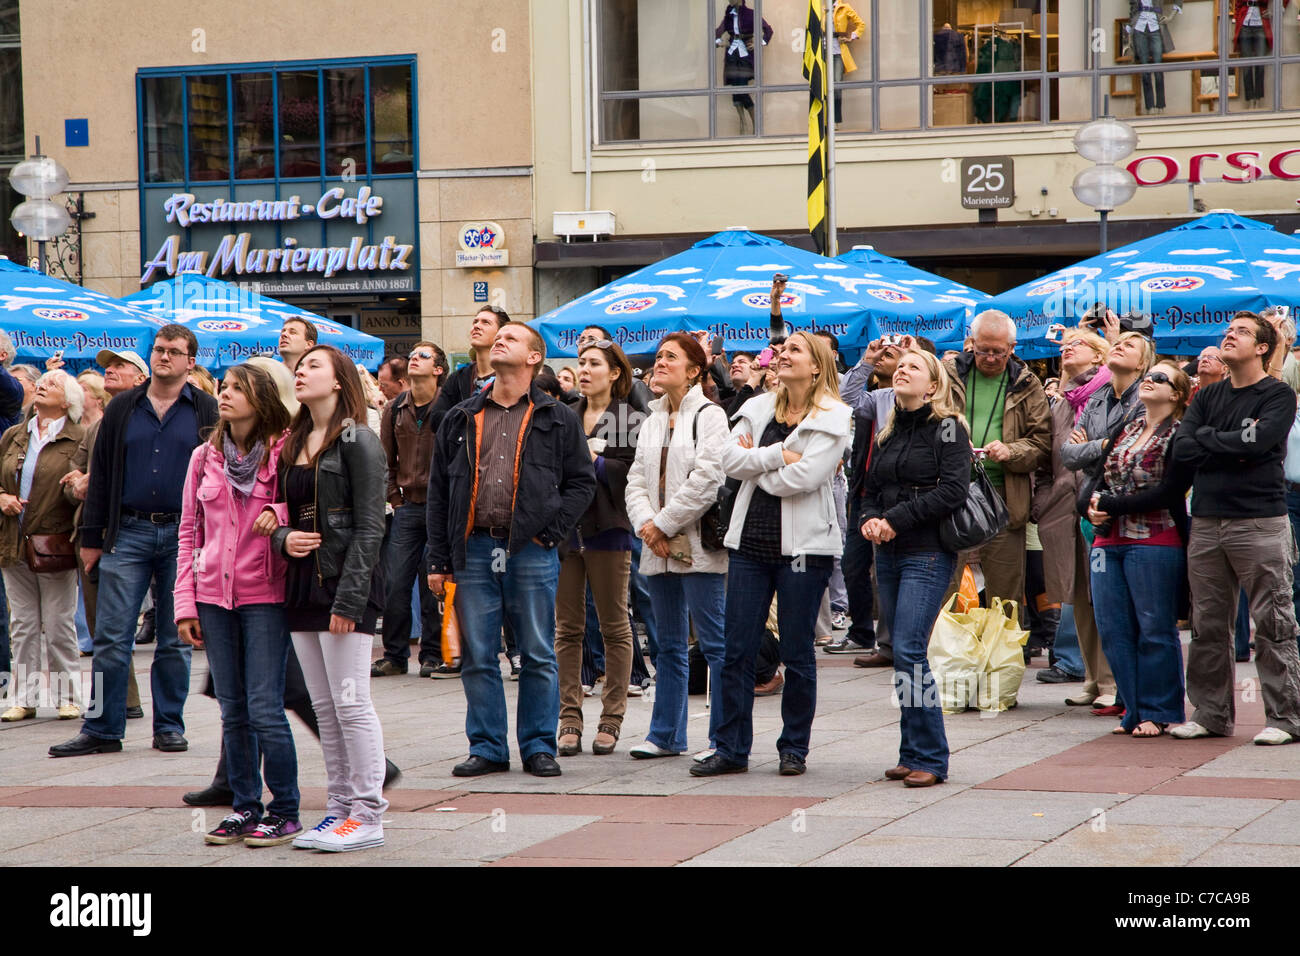 A crowd watches the Glockenspiel in Marienplatz, Munich, Germany. Stock Photo